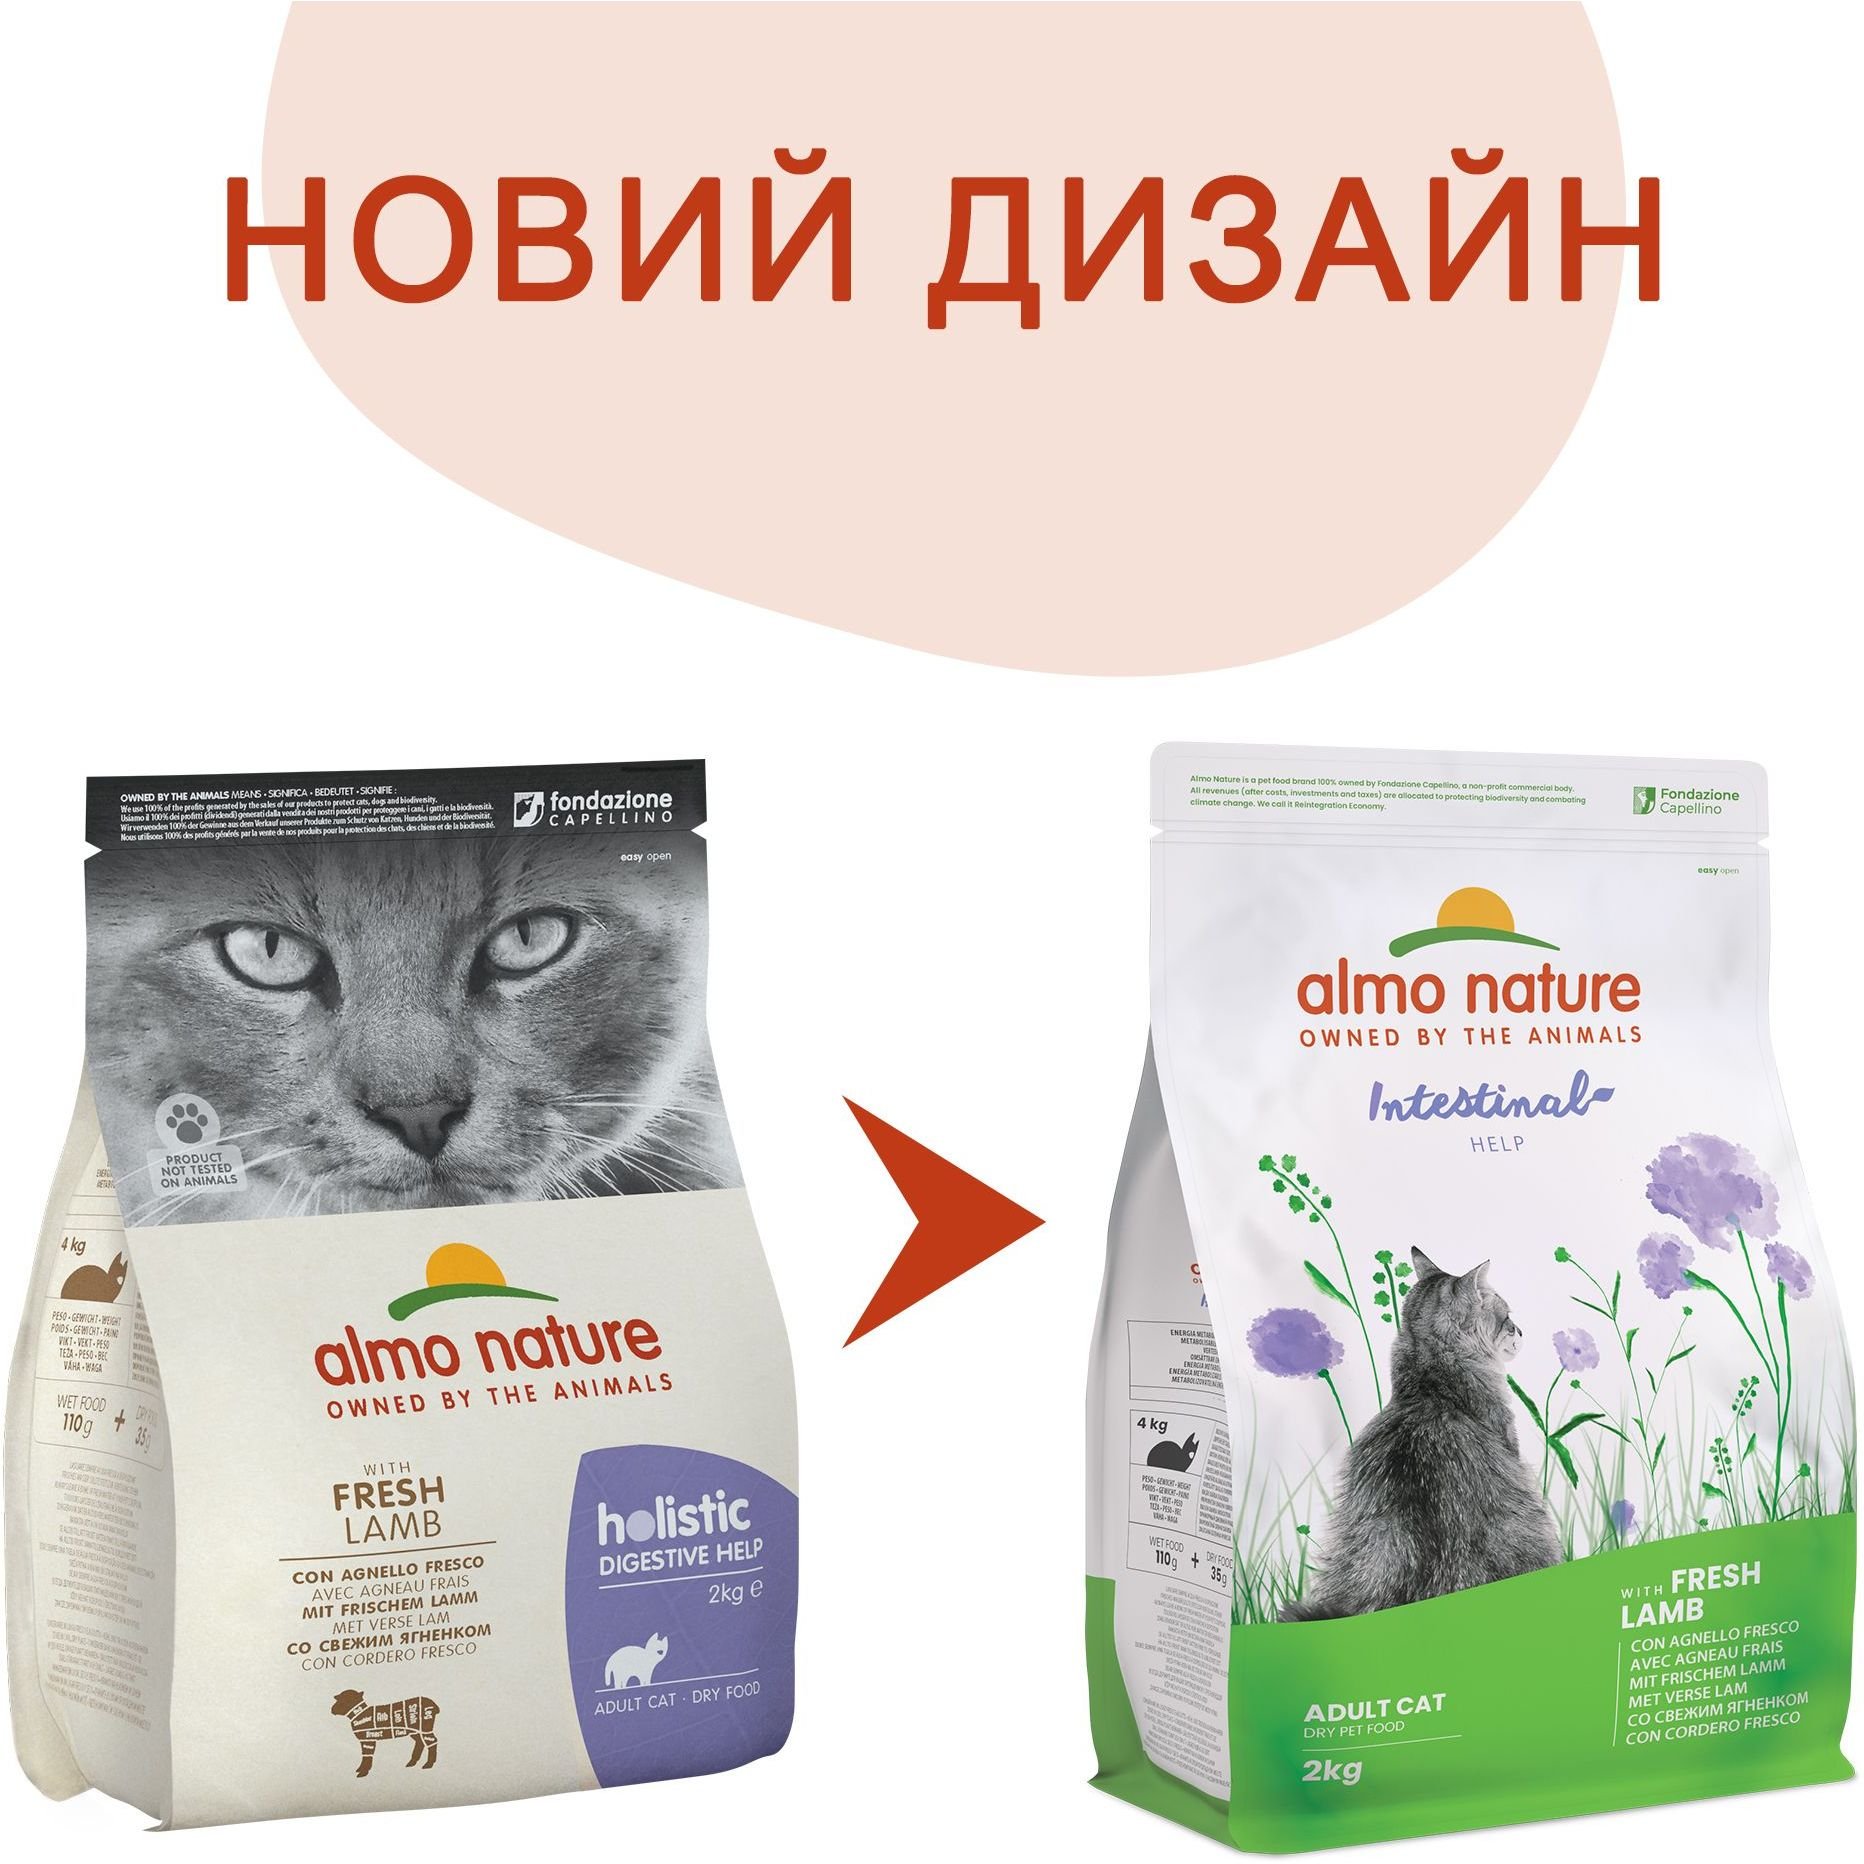 Сухой корм для кошек Almo Nature Holistic Cat с чувствительным пищеварением со свежим ягненком 2 кг (674) - фото 2